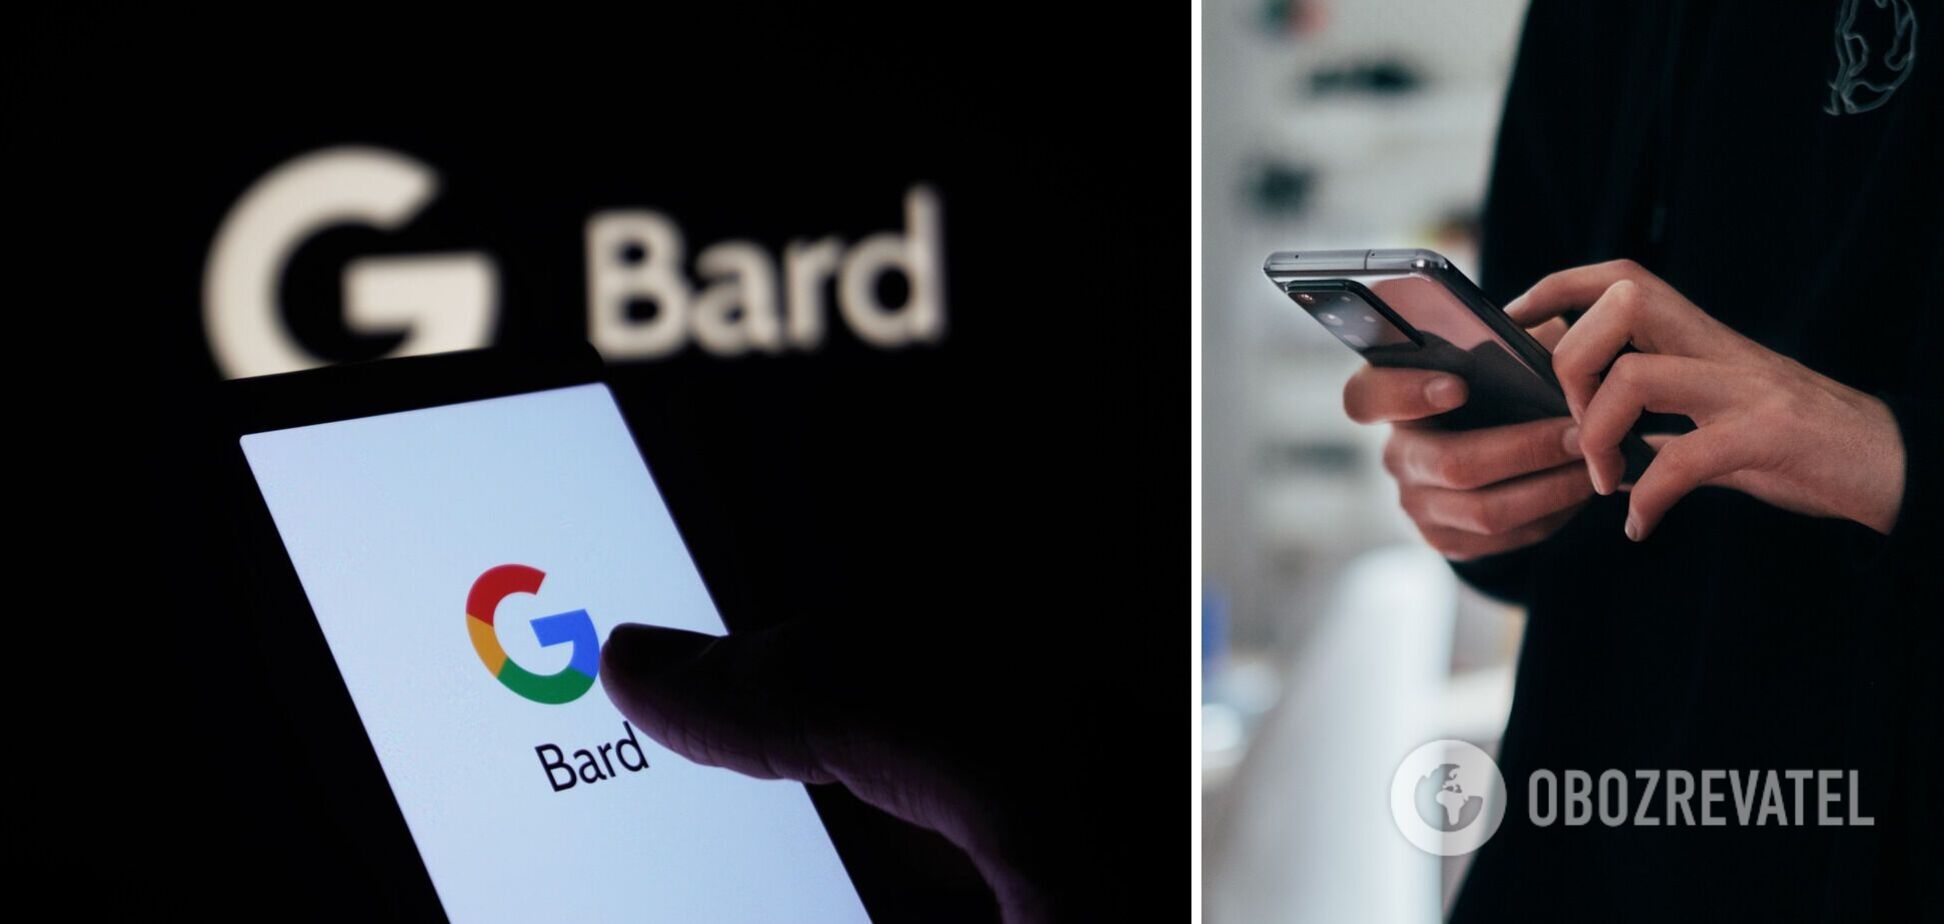 Google Bard умеет не только искать ответы, но и кодировать